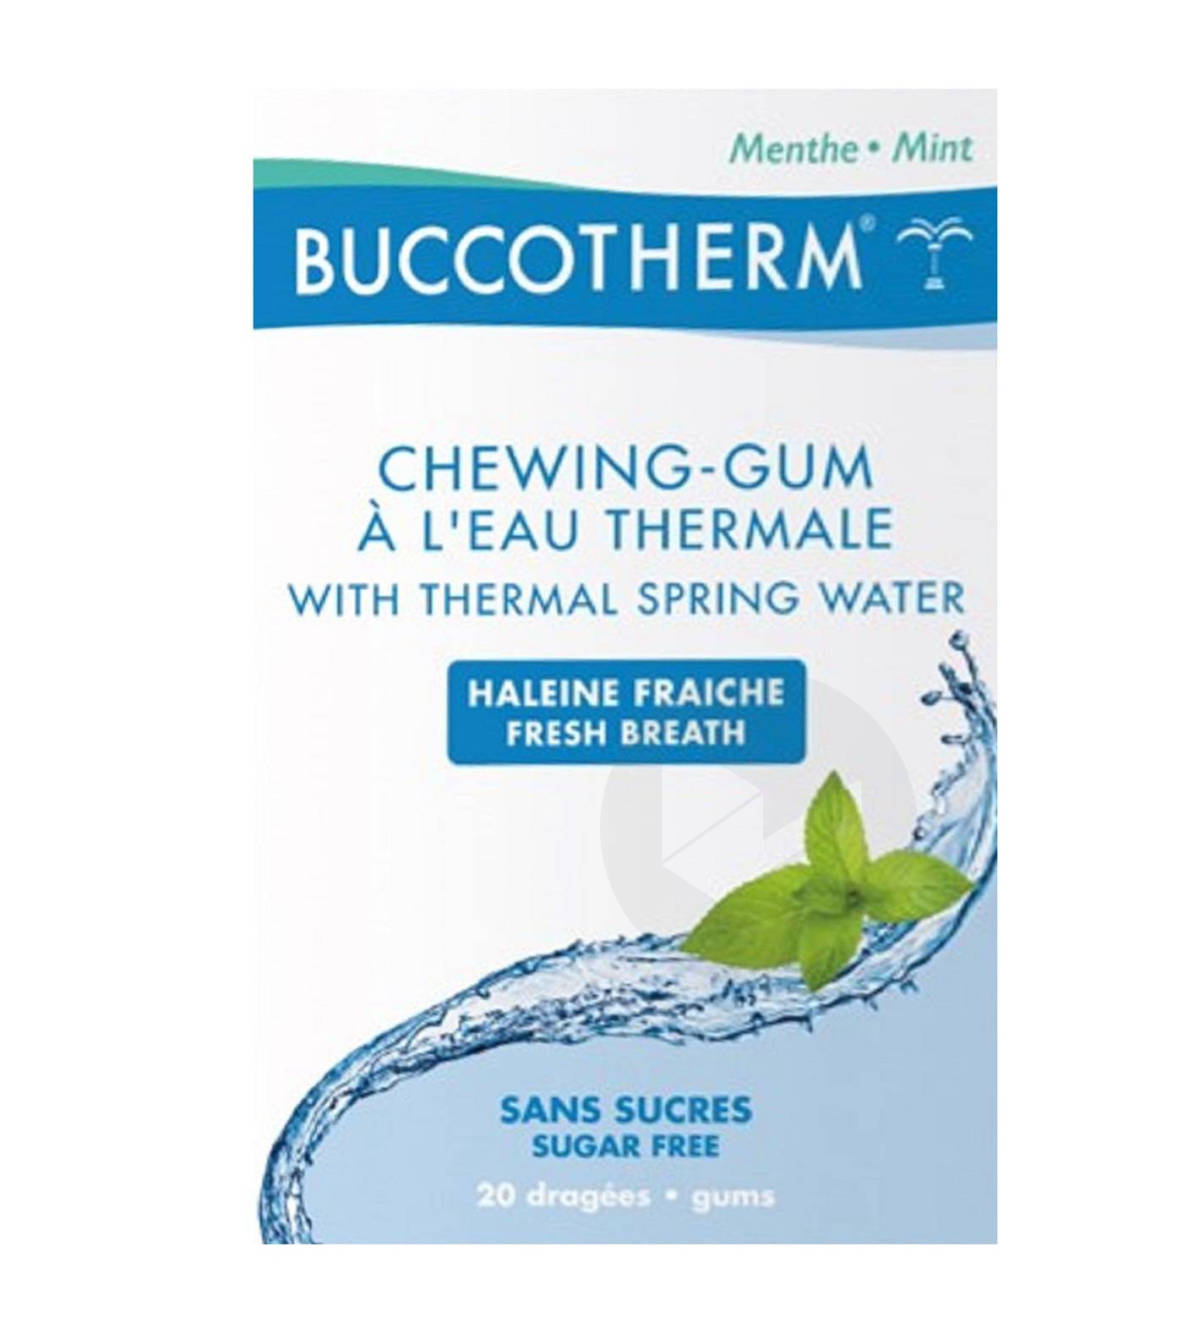 Chewing-gum à l'Eau Thermale sans sucres goût menthe fraiche 20 dragées